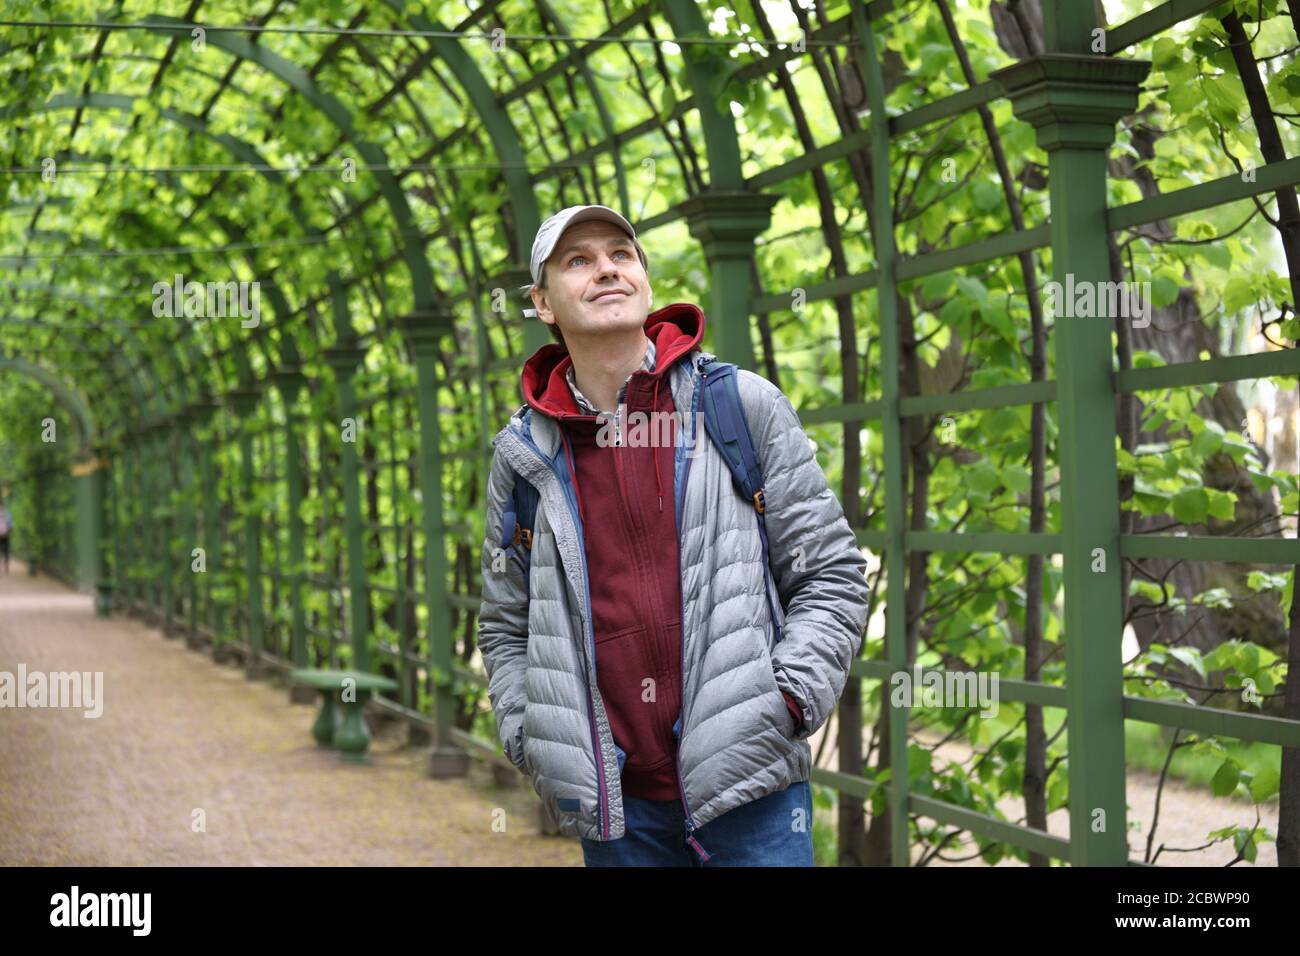 Reifer kaukasischer Mann mit Rucksack in einem Stadtgarten Stockfoto